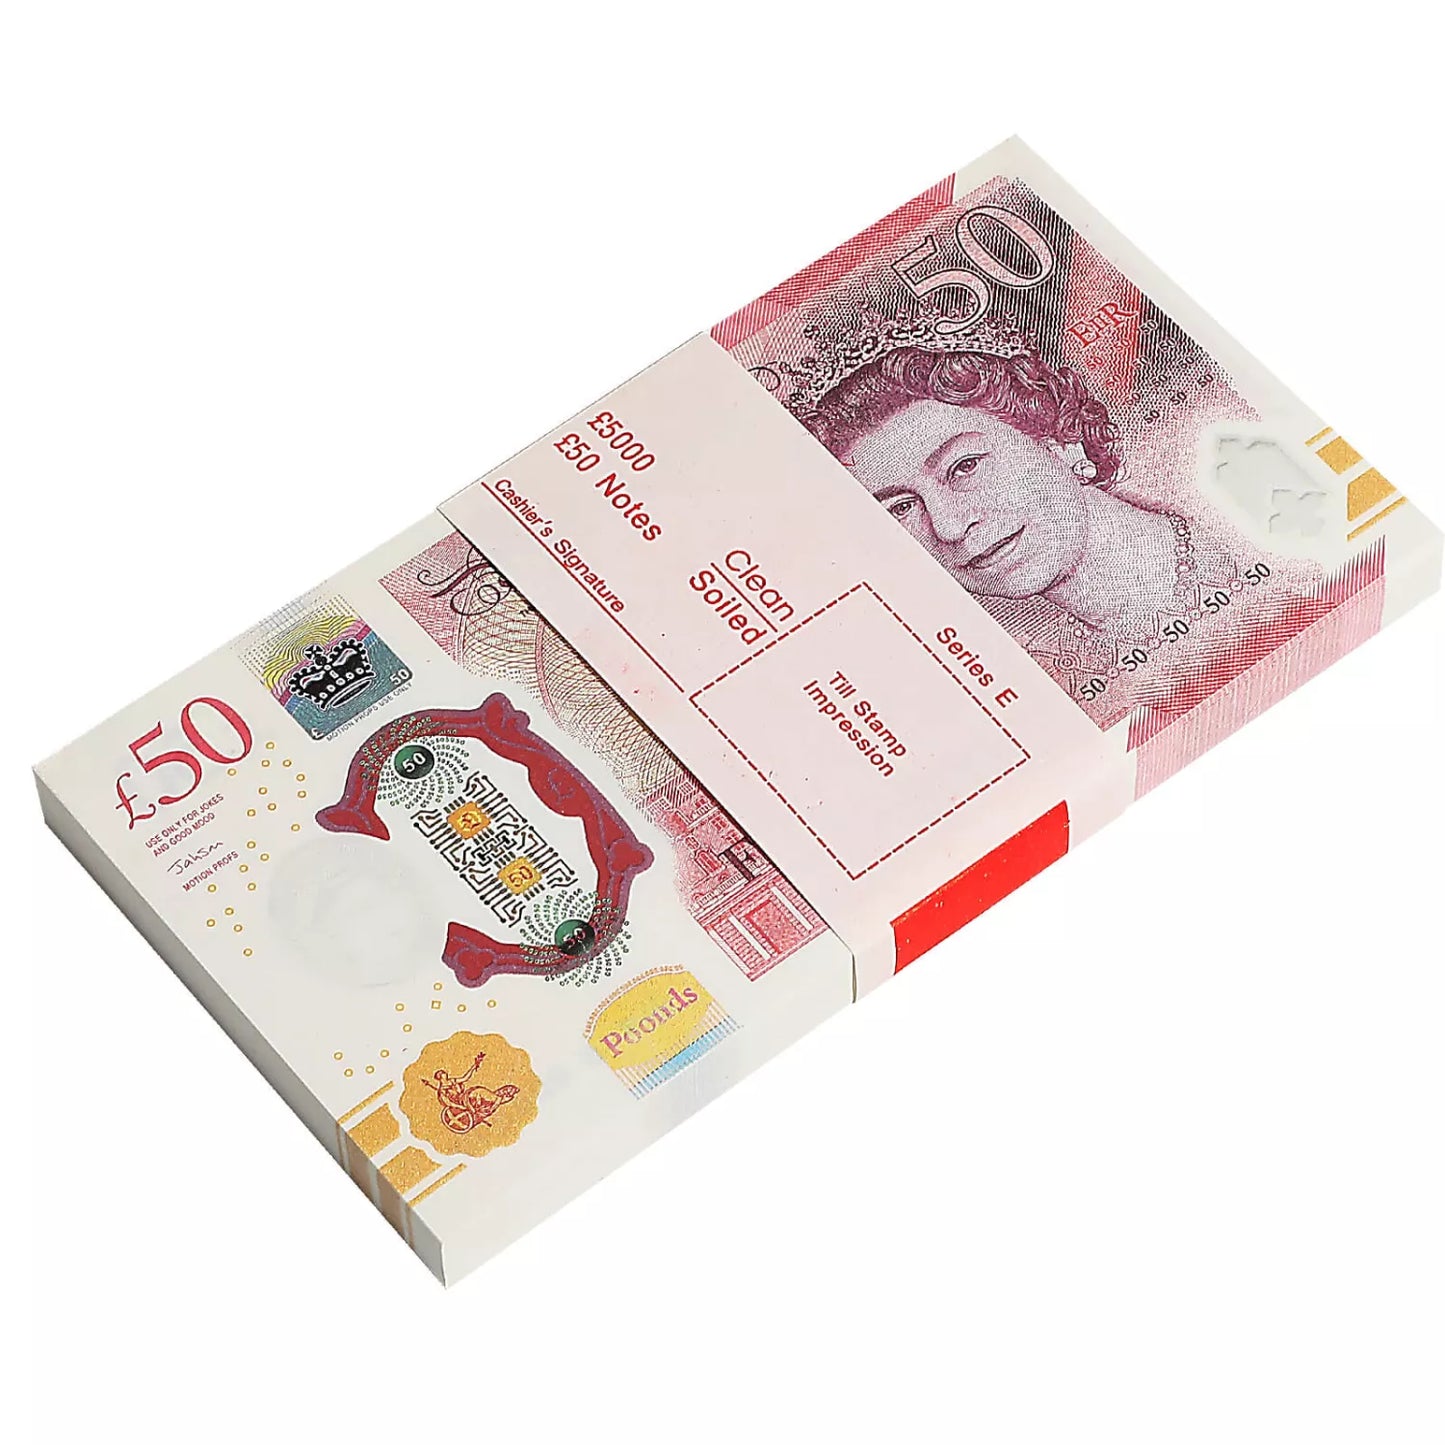 UK Prop Money GBP £ 50 Pound Notes £ 5 000 Impression complète